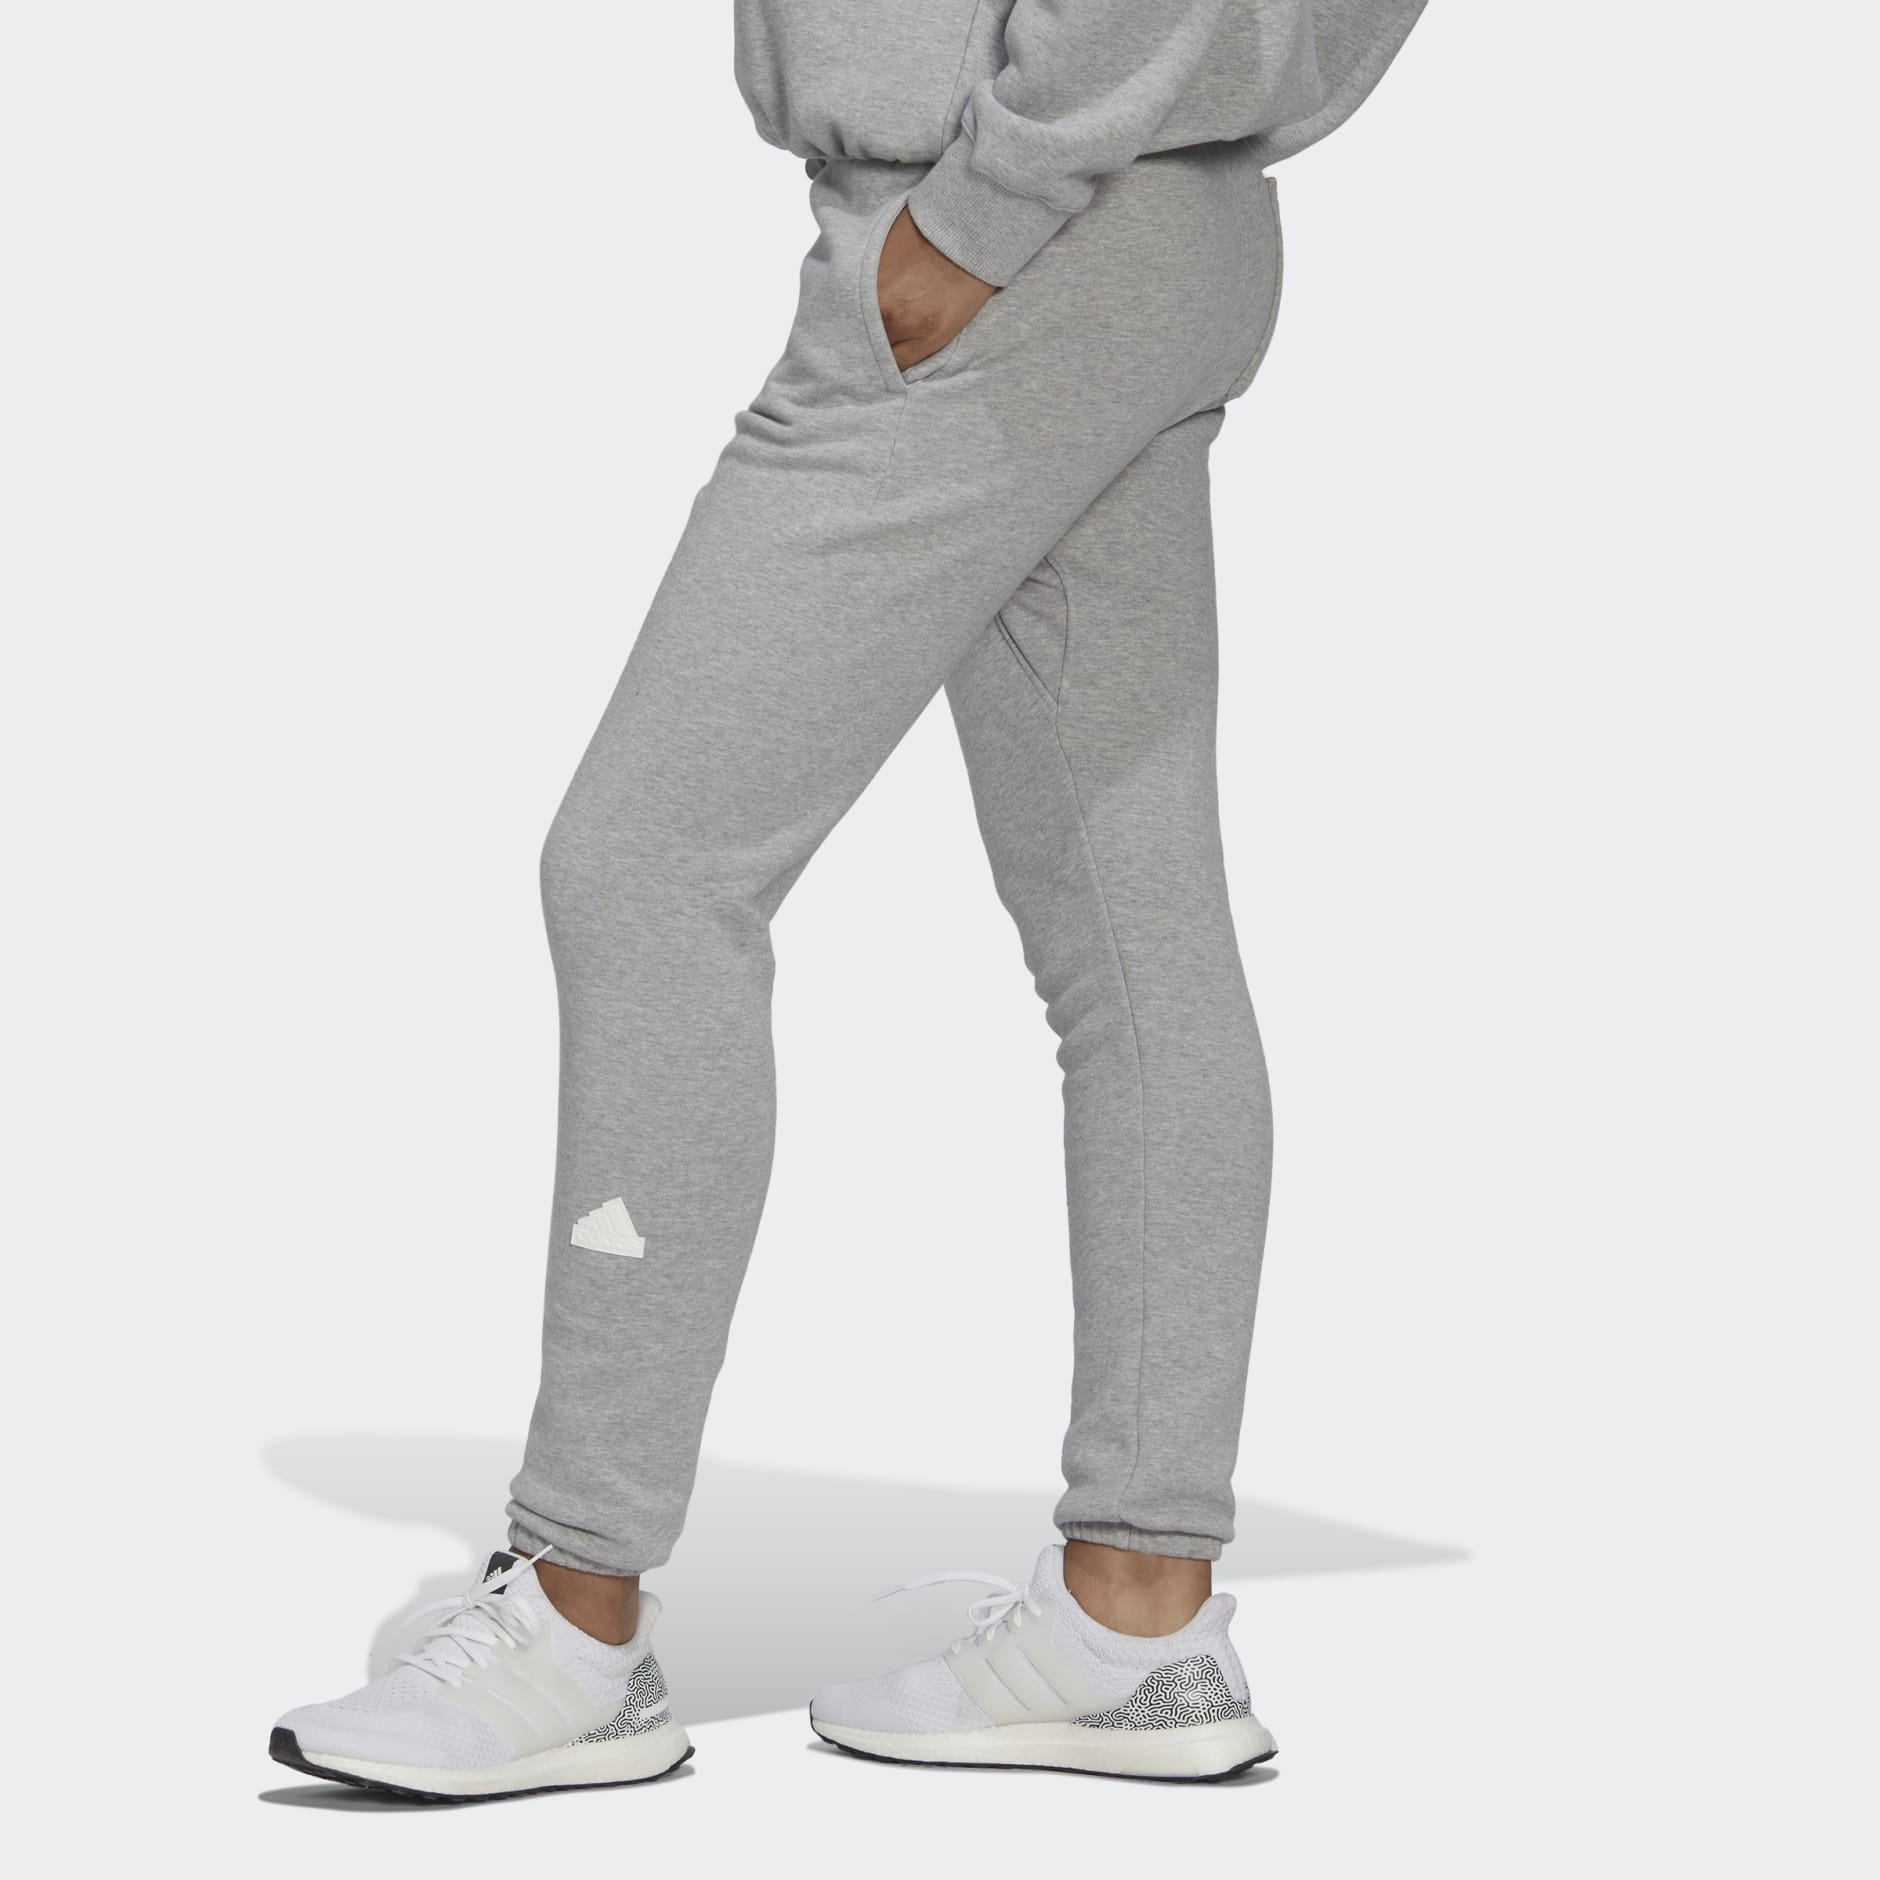 medio Hula hoop Albardilla Women's Clothing - Sweat Pants - Grey | adidas Oman